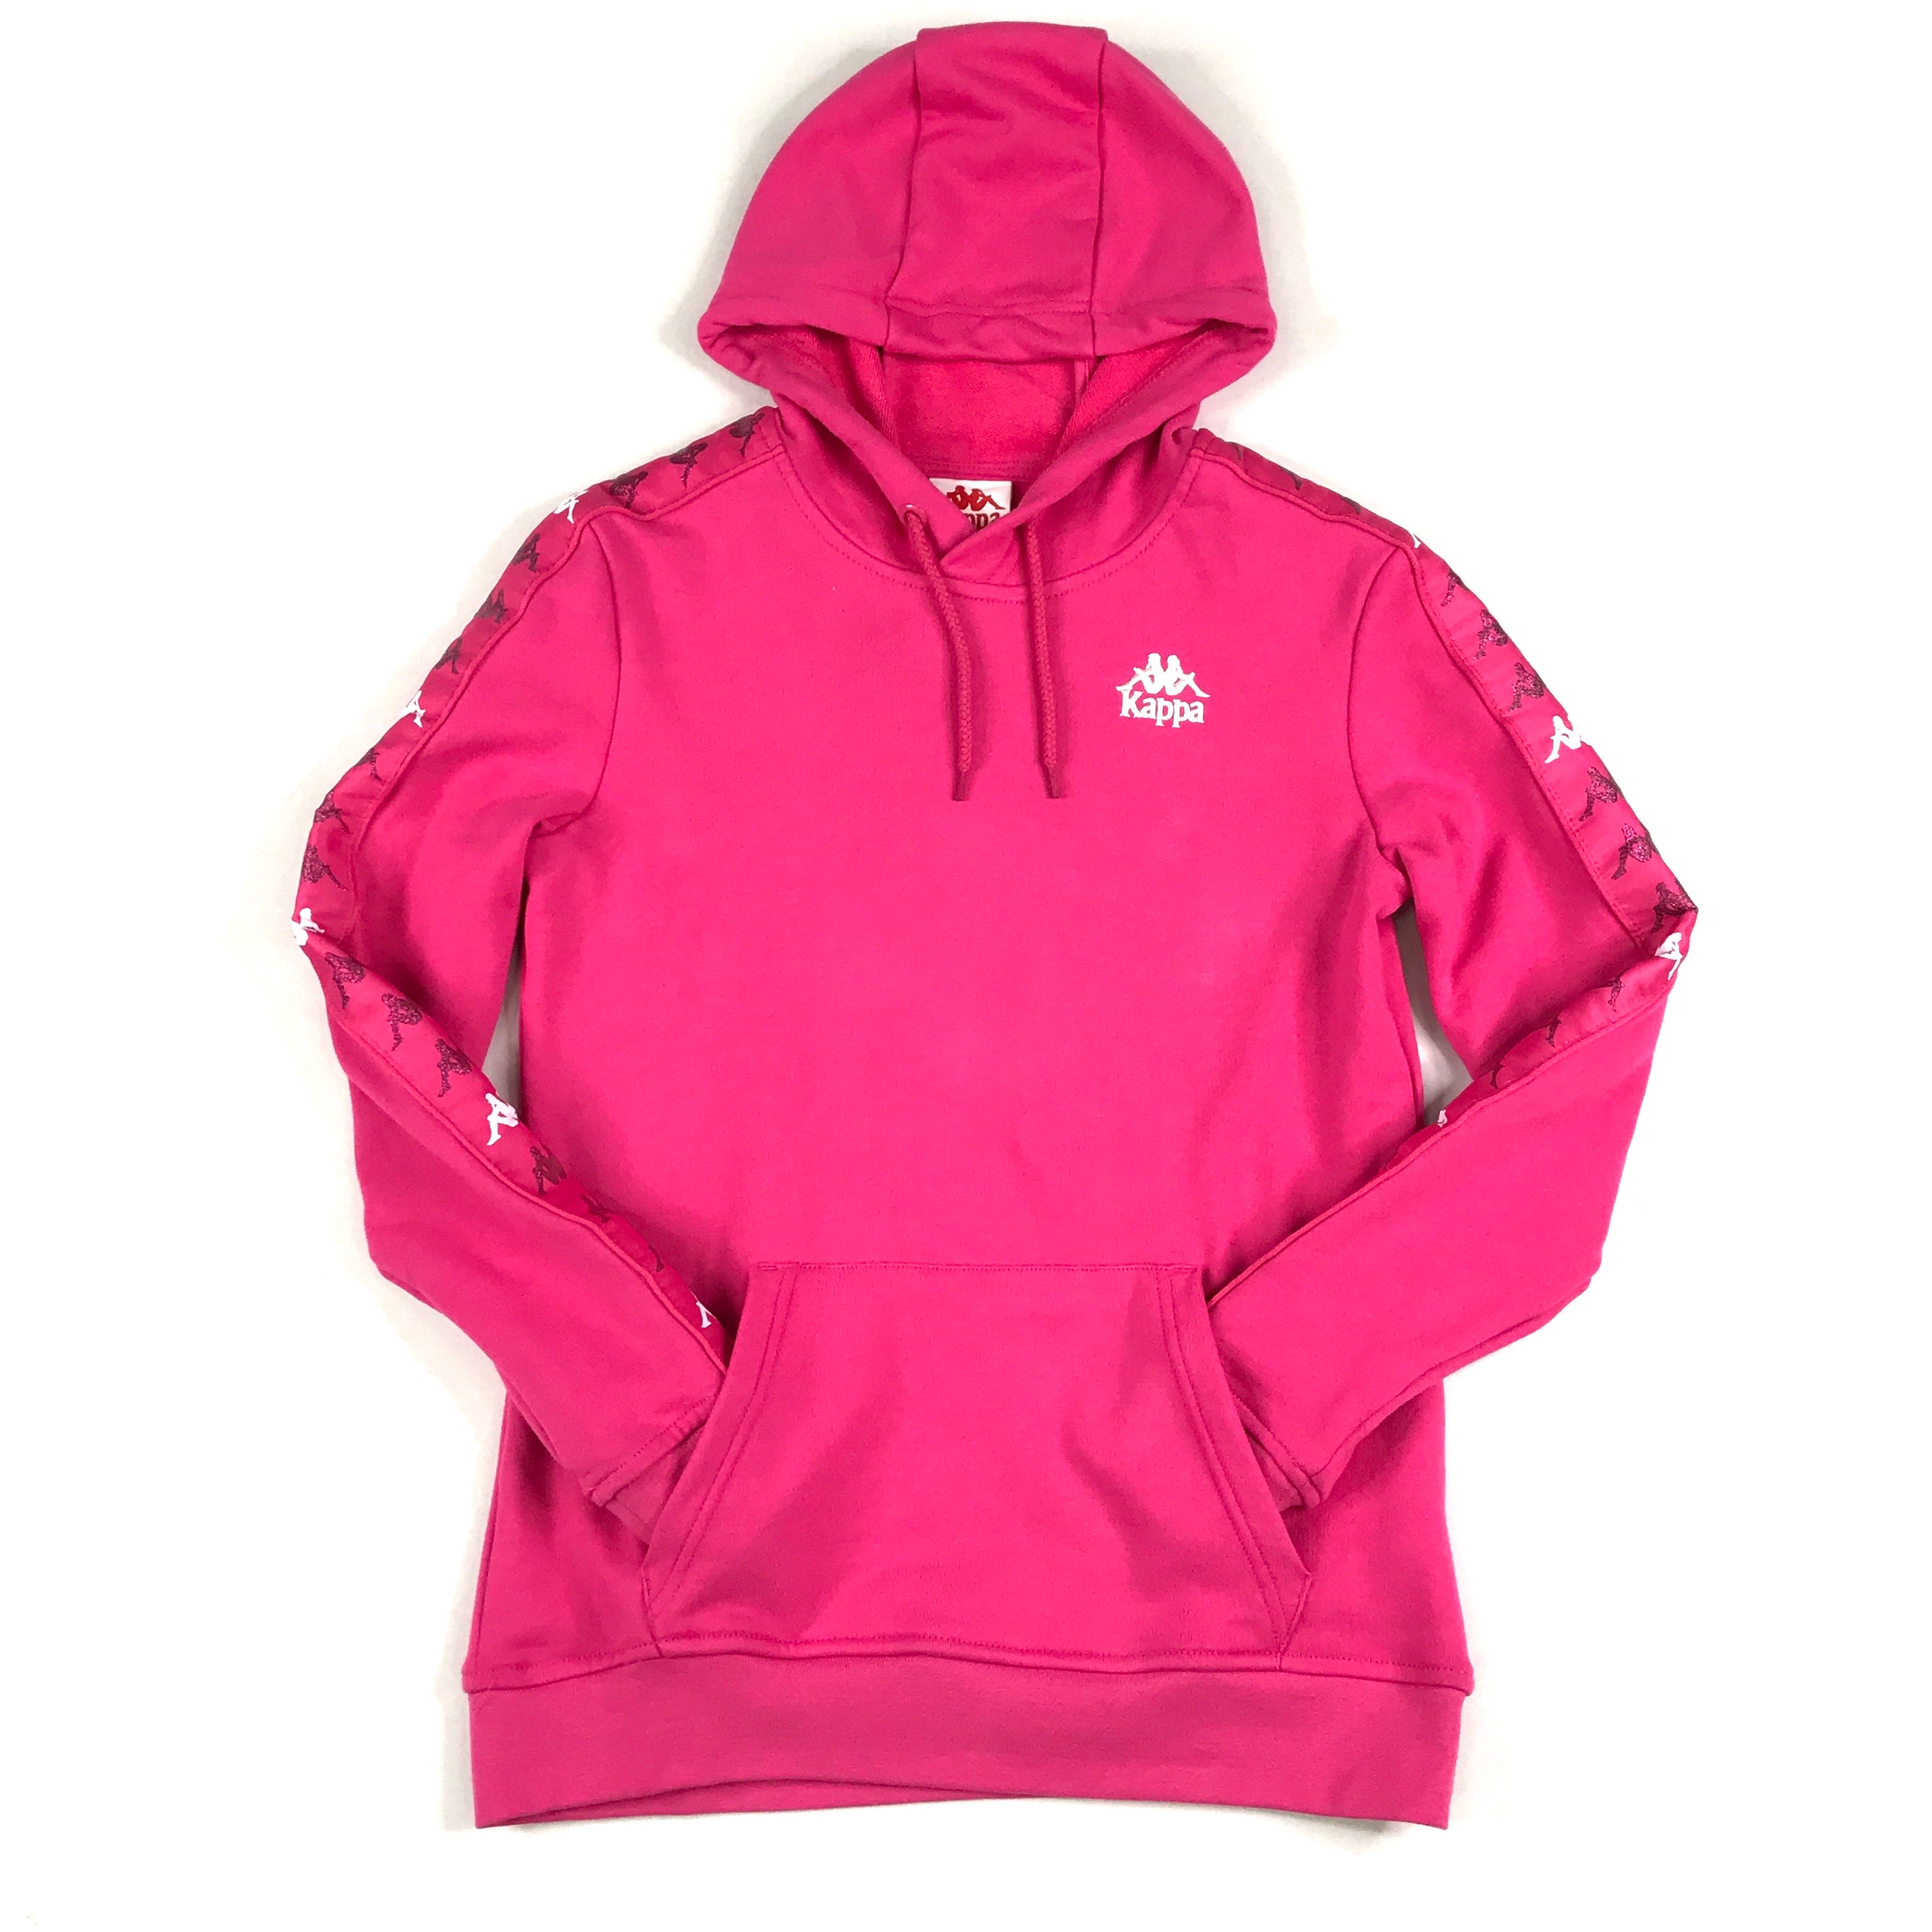 Kappa 222 Banda Budy 3 hoodie in pink raspberry-white